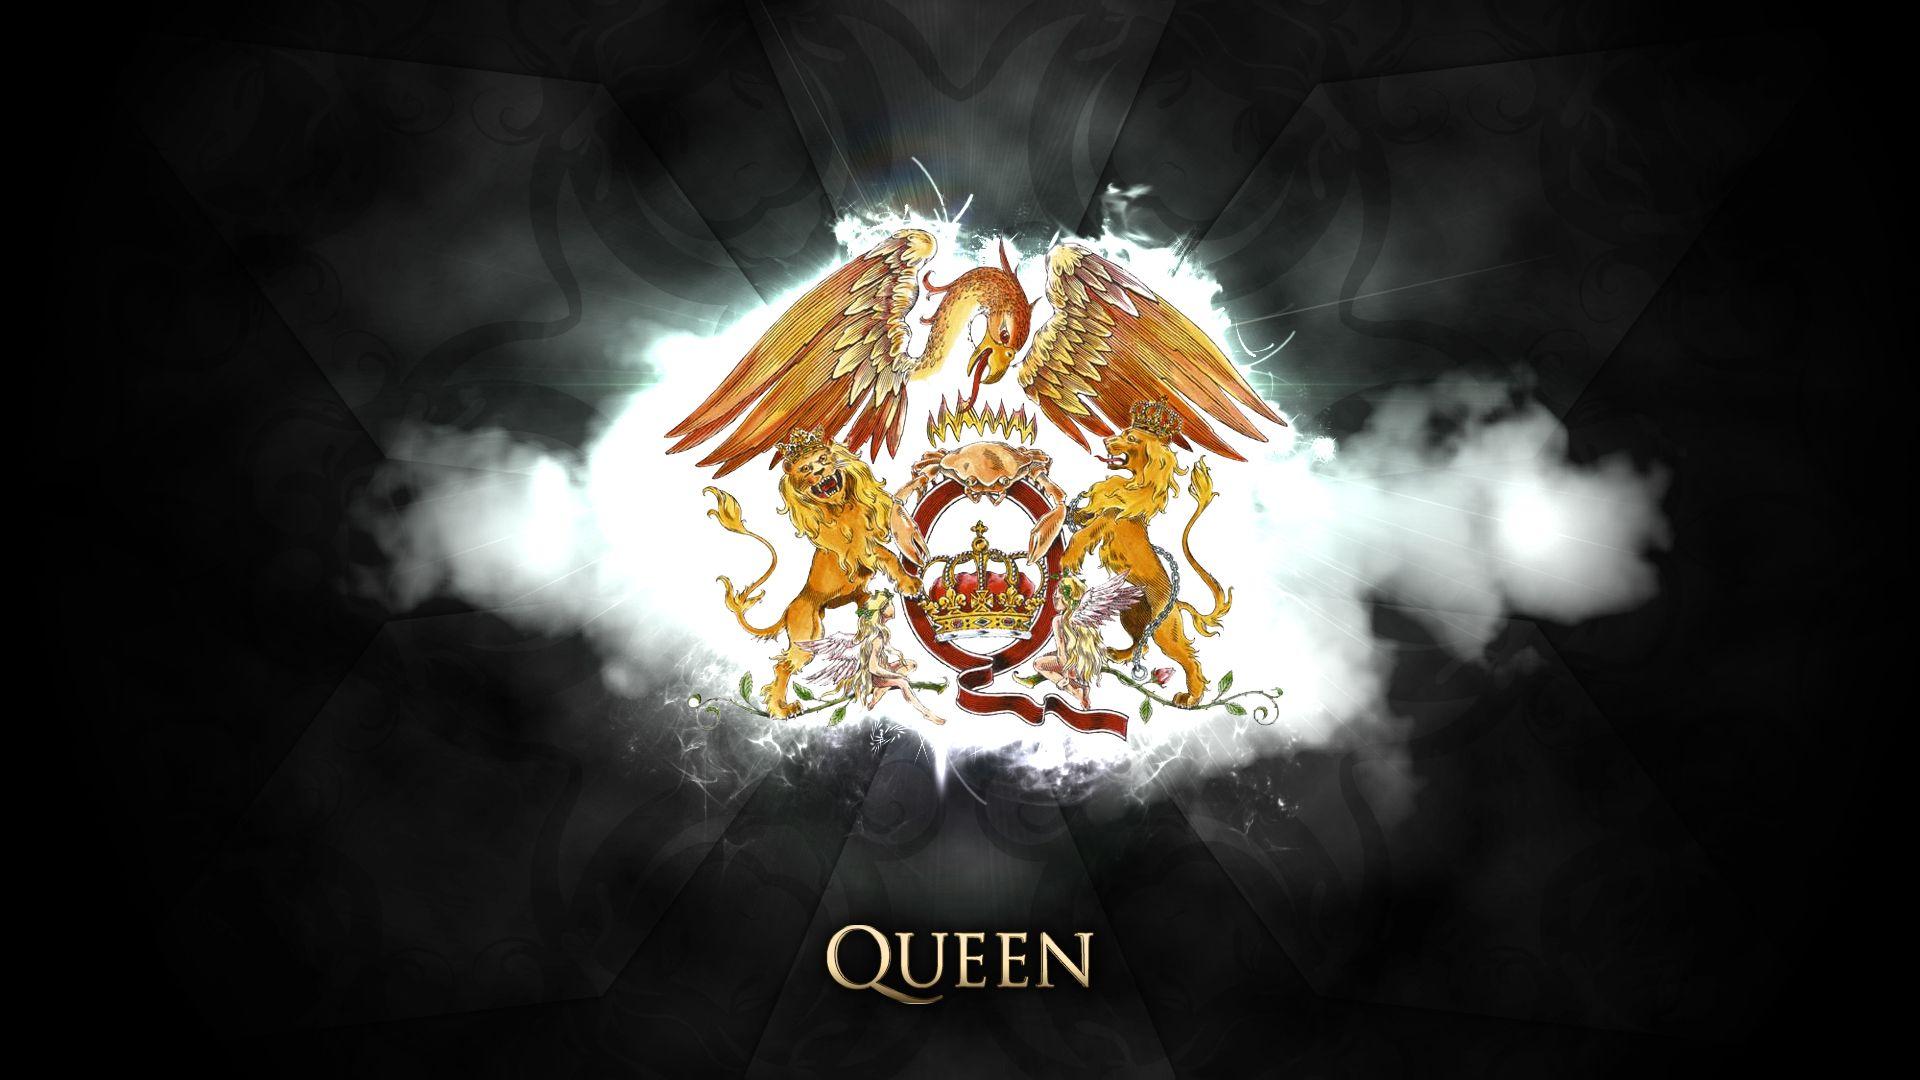 Với hình nền Rock của Queen, bạn sẽ được trải nghiệm cảm giác mãnh liệt và cuồng nhiệt của thể loại âm nhạc này. Hình ảnh nhóm Queen trên nền Rock chắc chắn sẽ là một lựa chọn tuyệt vời để thực sự tôn vinh bộ môn âm nhạc này.